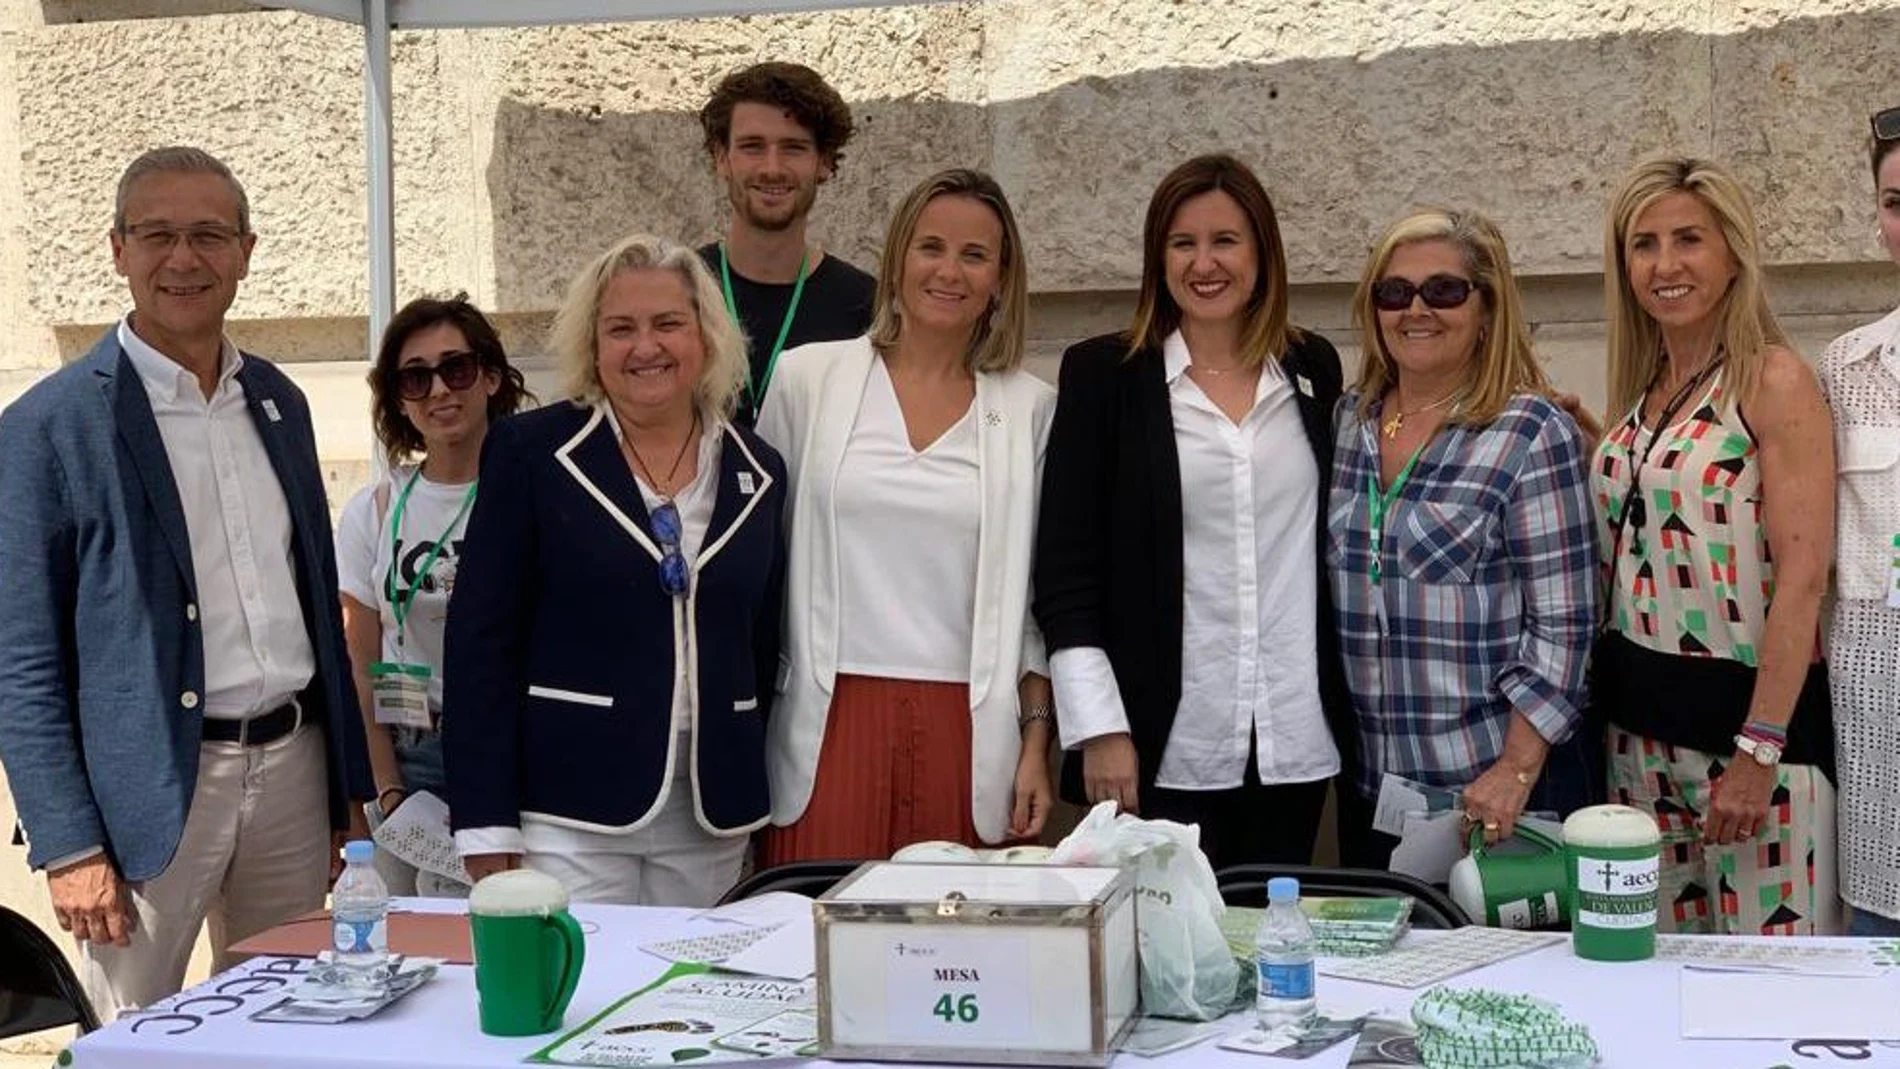 La concejala electa del PP María José Catalá, el pasado jueves en la mesa petitoria de la lucha contra el cáncer en compañía de los concejales del grupo municipal popular